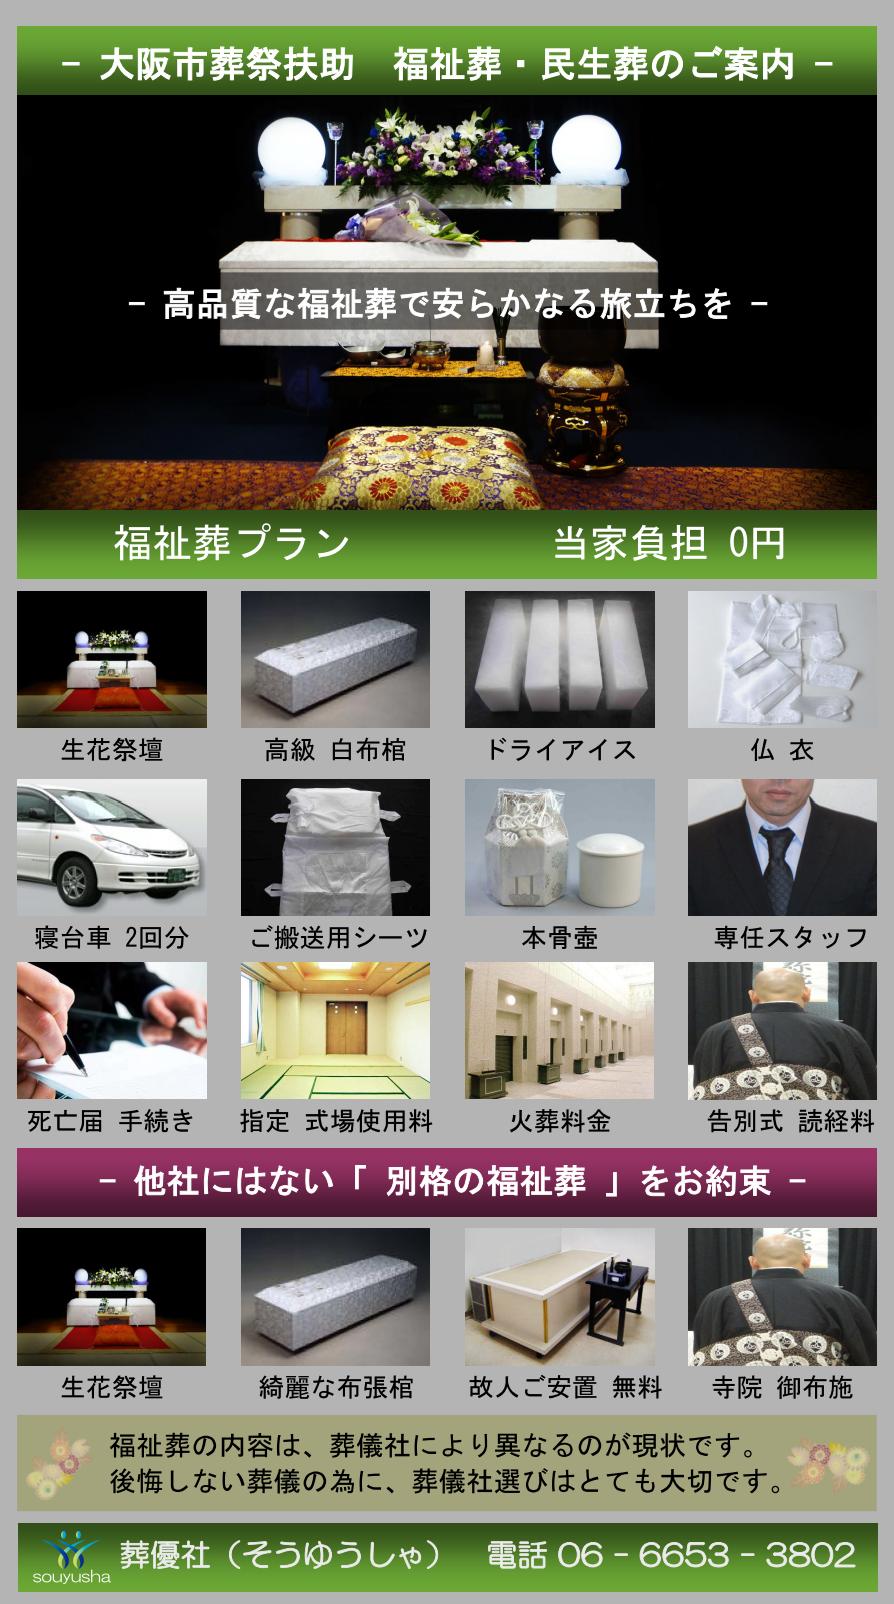 大阪市 東住吉区での福祉葬、生活保護者のお葬式のご案内